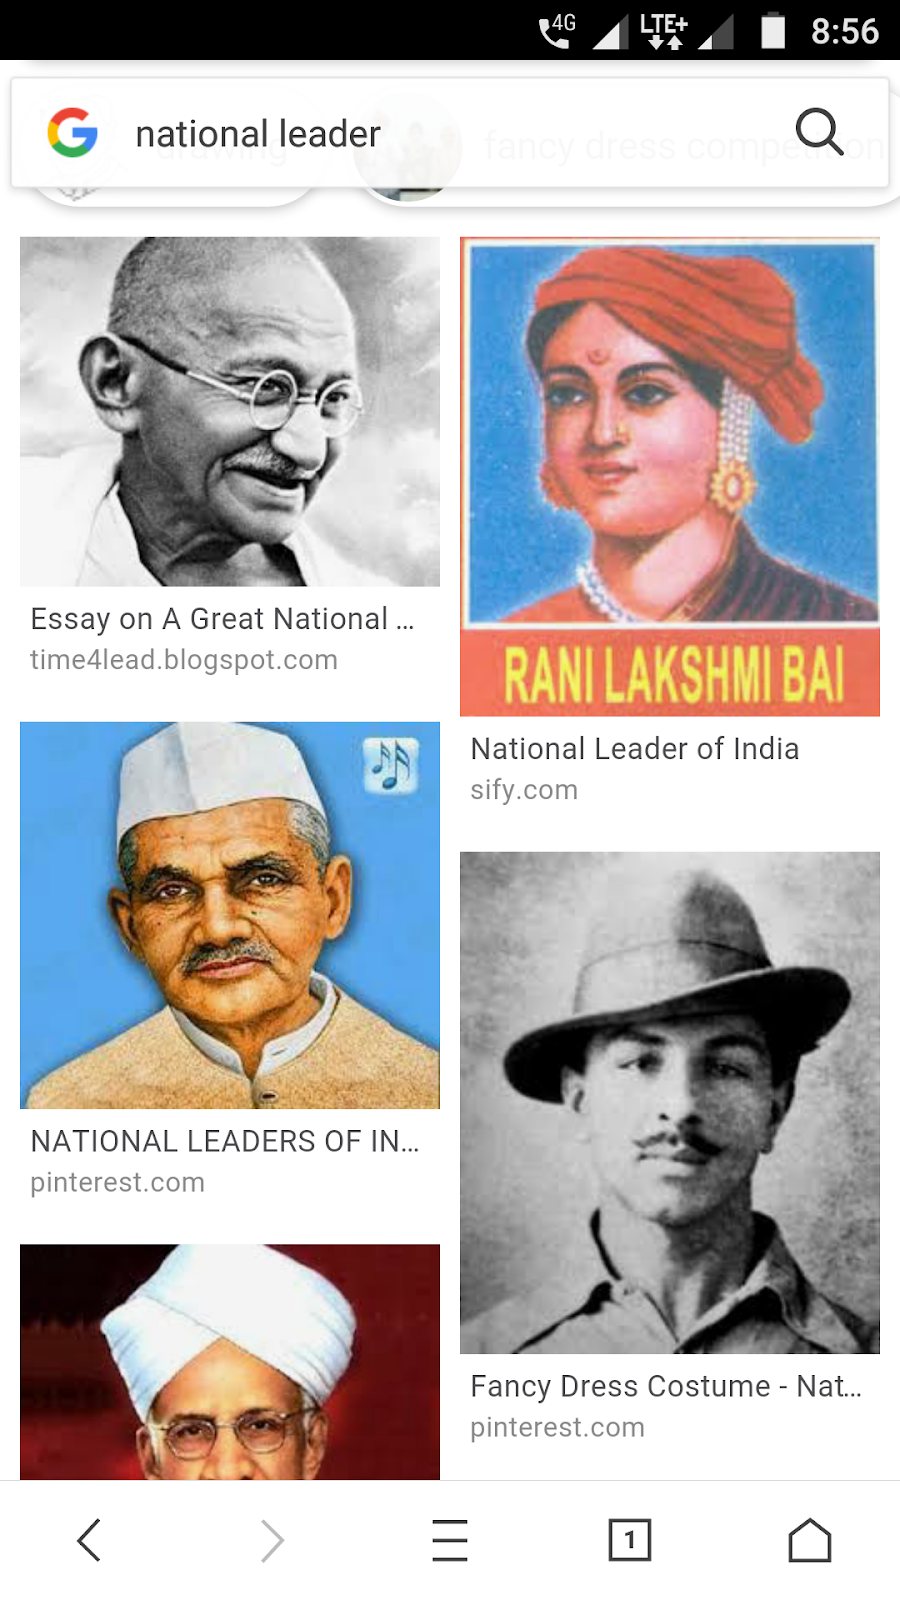 National leaders